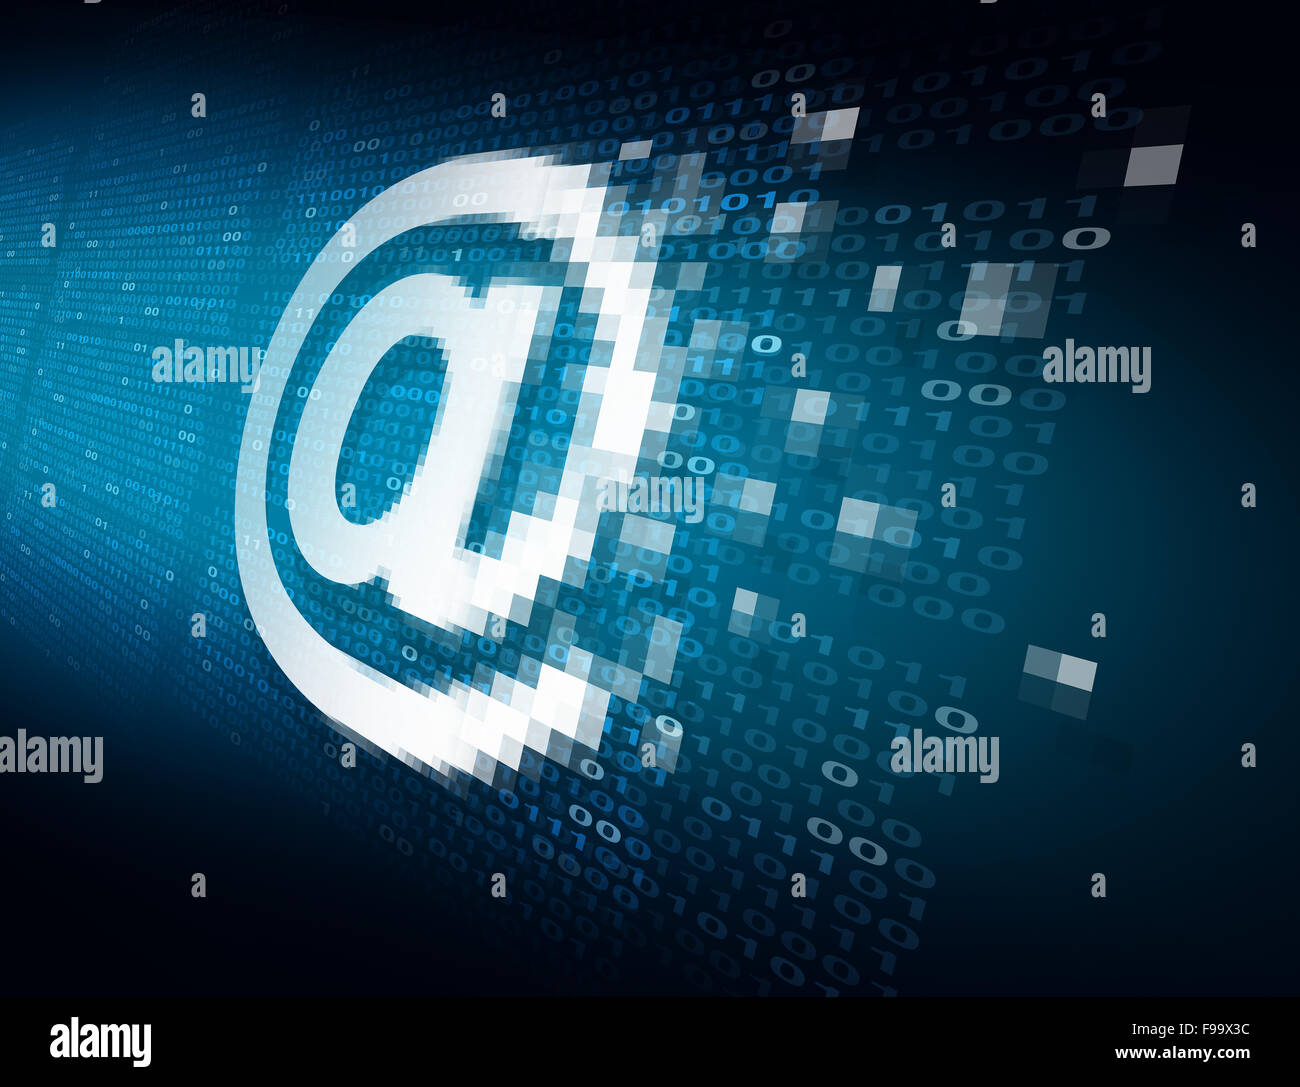 E-Mail-Internet-Security-Technologie-Konzept als ein Zeichen Symbol verschlüsselt für den Transfer Datenschutz mit Binär-Code Hintergrund als Ikone Online-Sicherheit, Passwort und Benutzernamen oder Lesen von persönlichen Inhalten zu schützen. Stockfoto